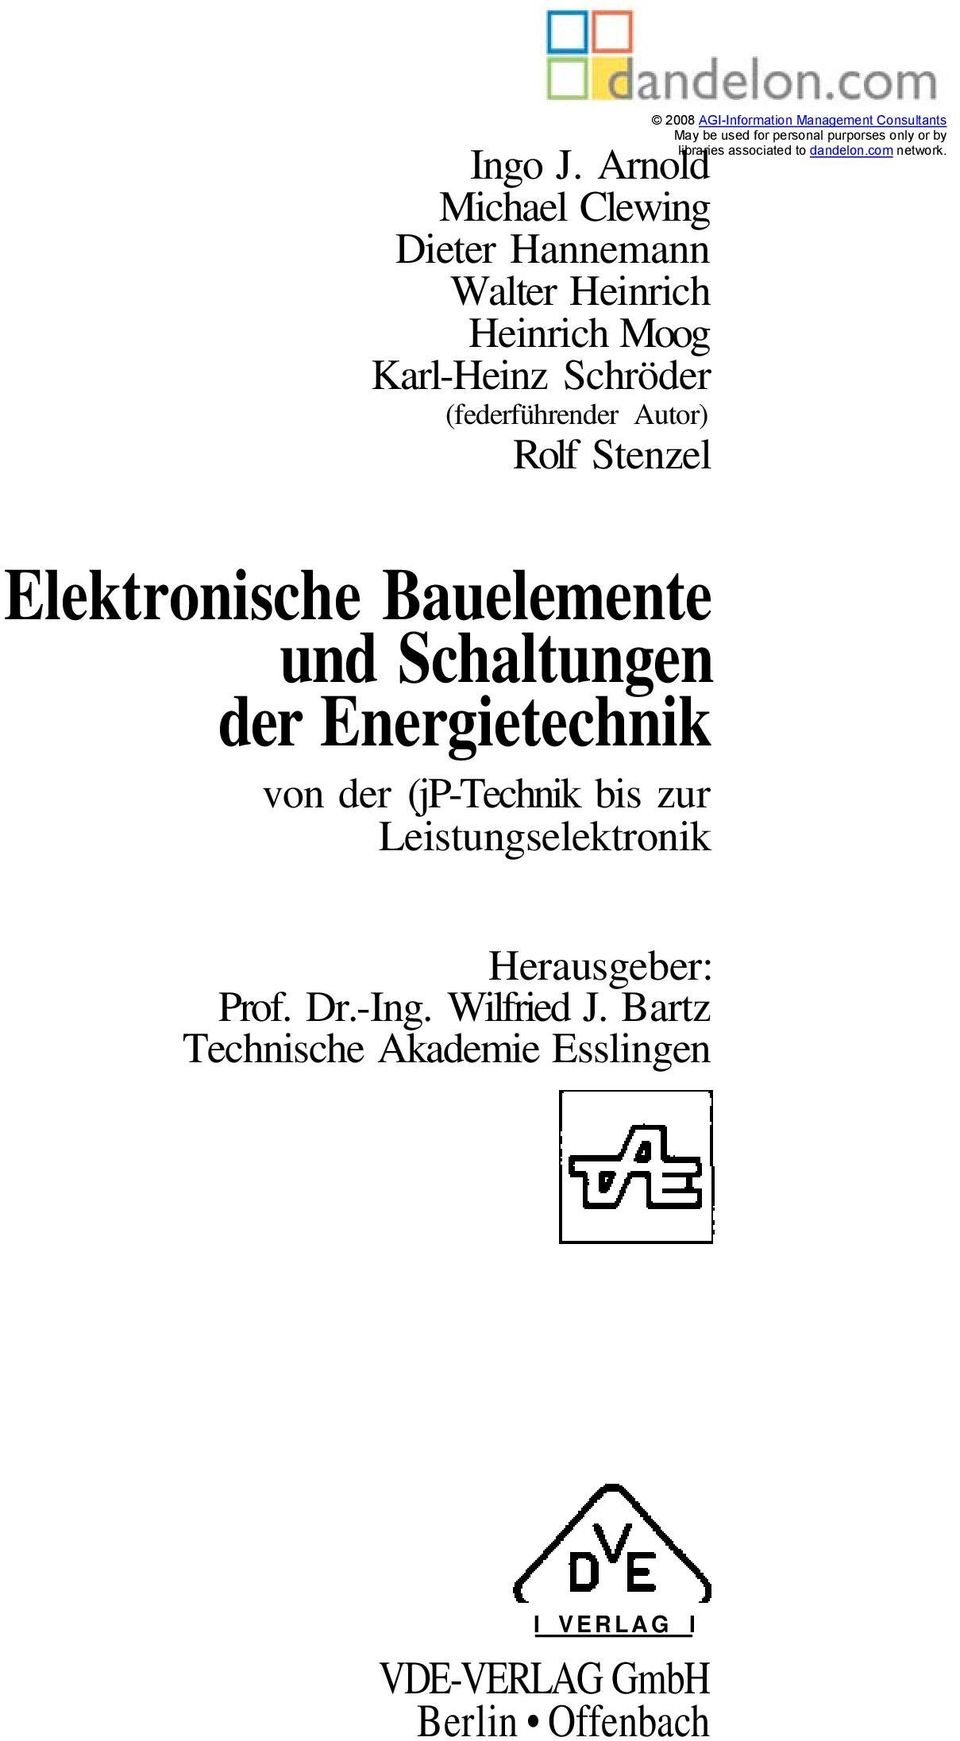 Stenzel Elektronische Bauelemente und Schaltungen der Energietechnik von der (jp-technik bis zur Leistungselektronik 2008